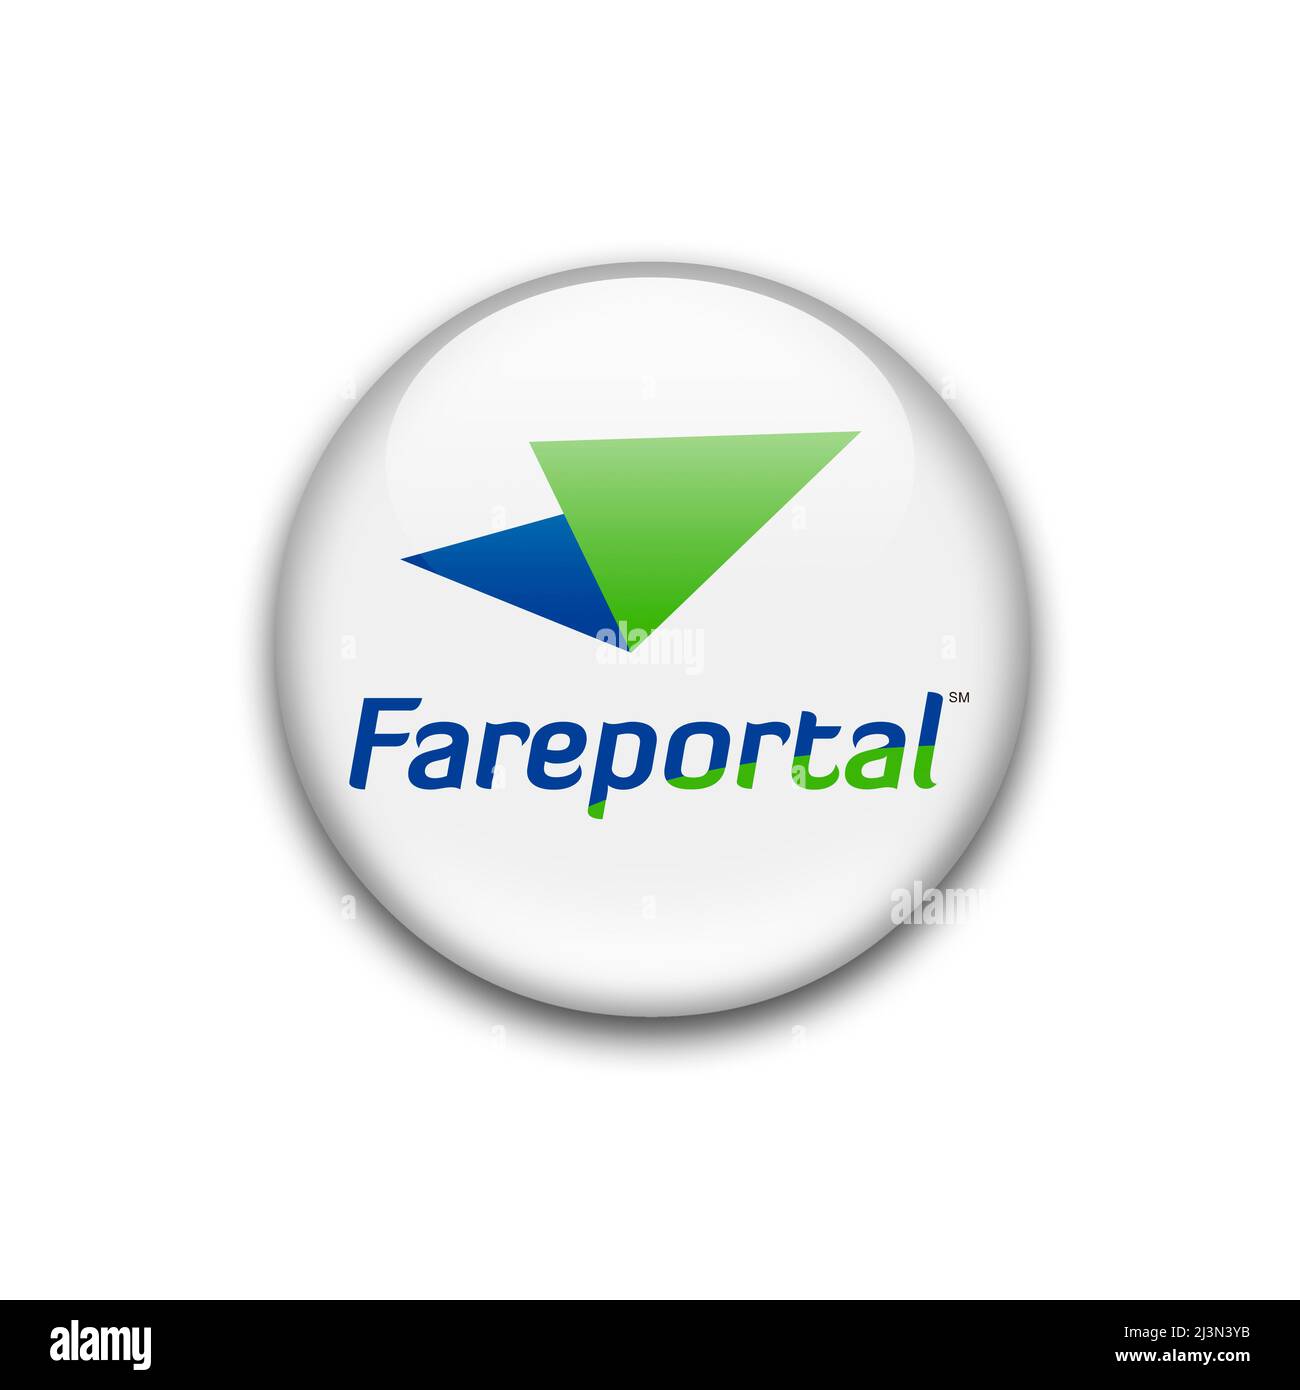 Fareportal logo Stock Photo